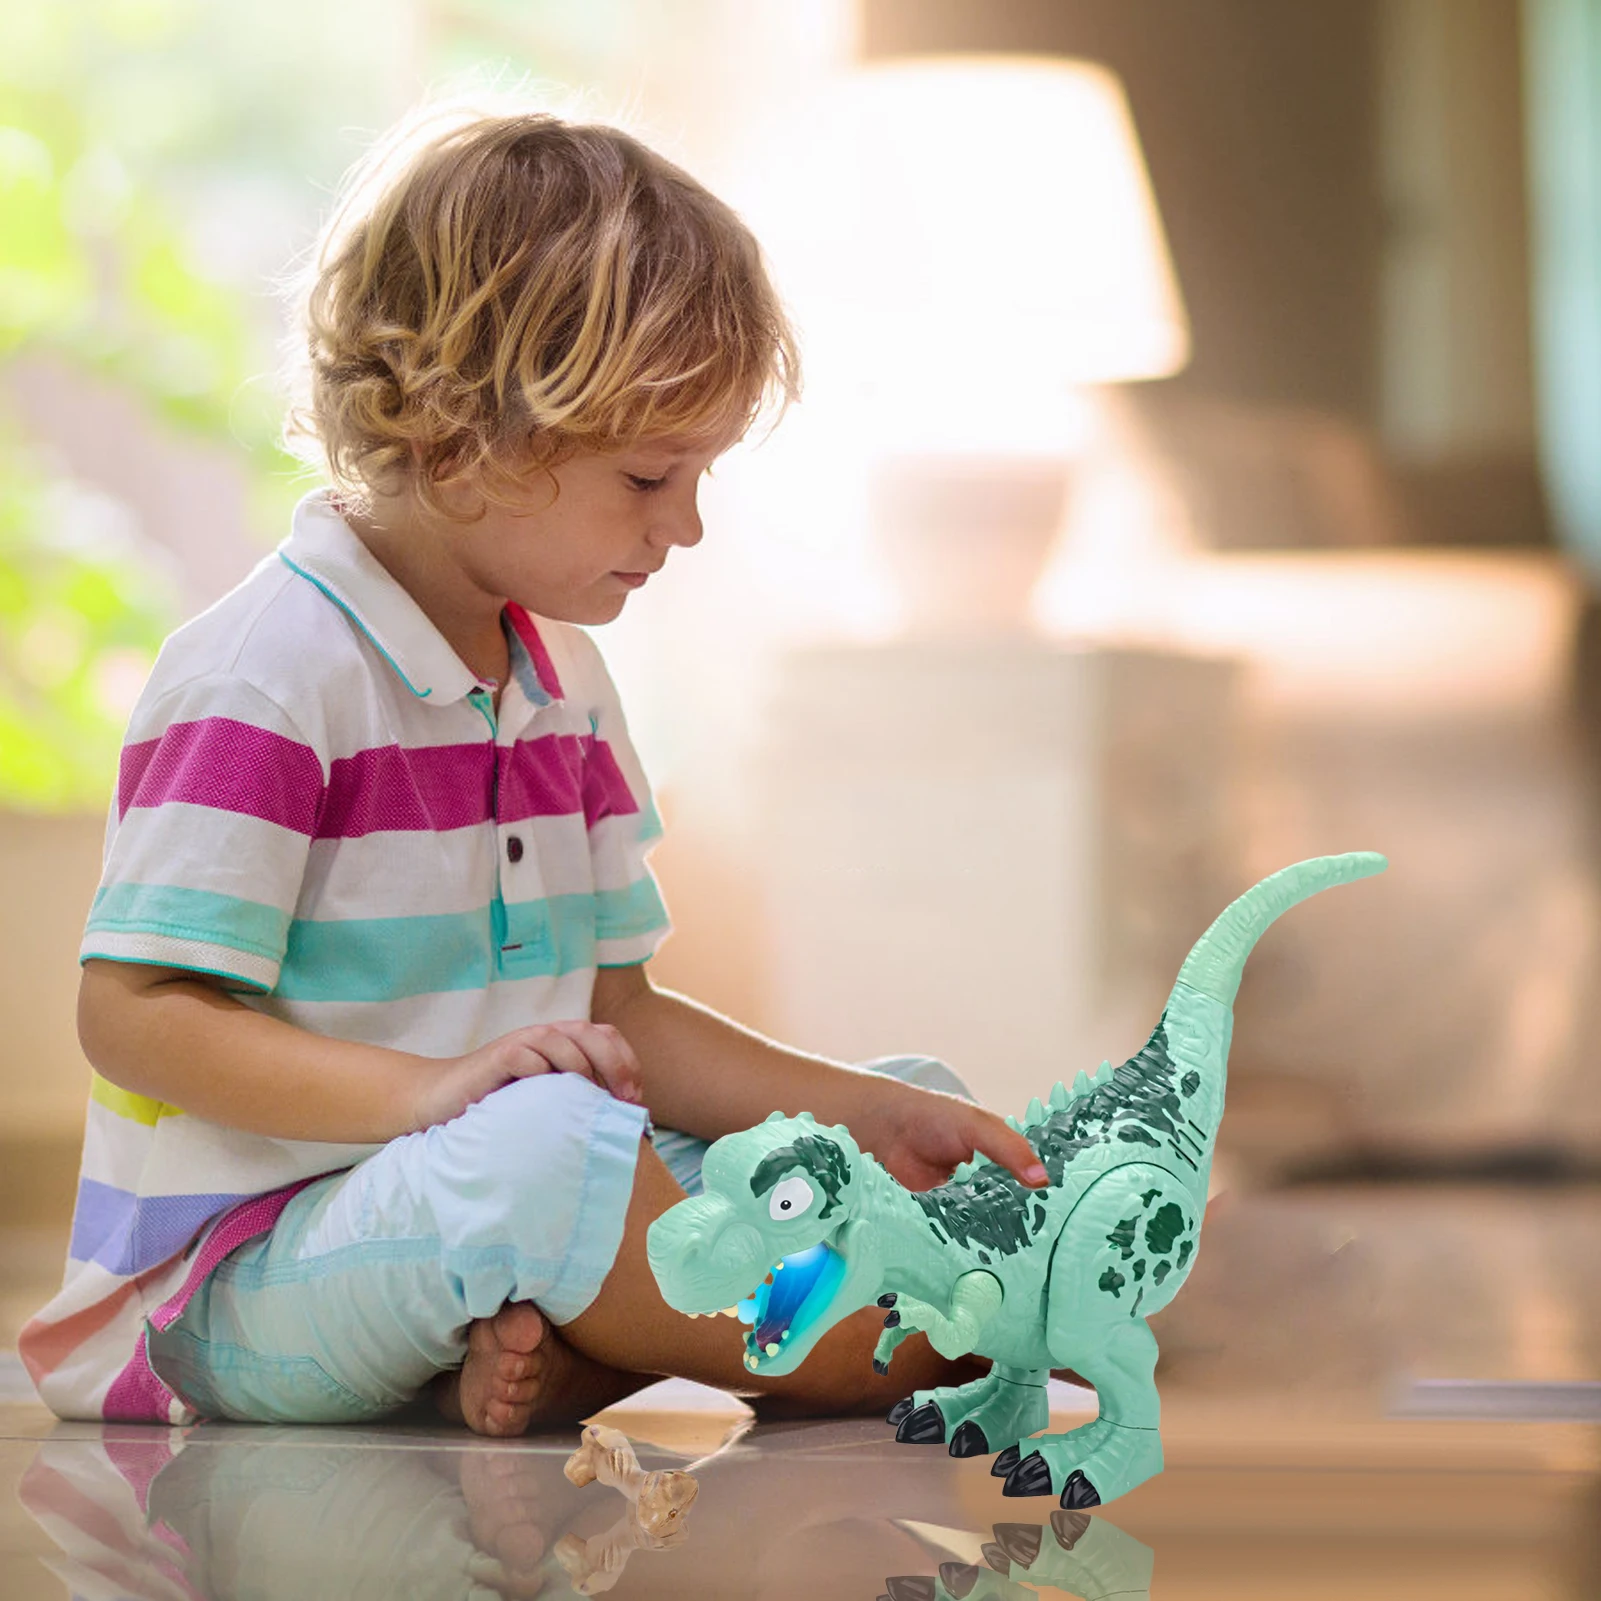 Dinosauro giocattoli giocattolo dinosauro elettrico con suoni e giocattolo dinosauro ruggente regalo per ragazzi e ragazze 3 e oltre anni